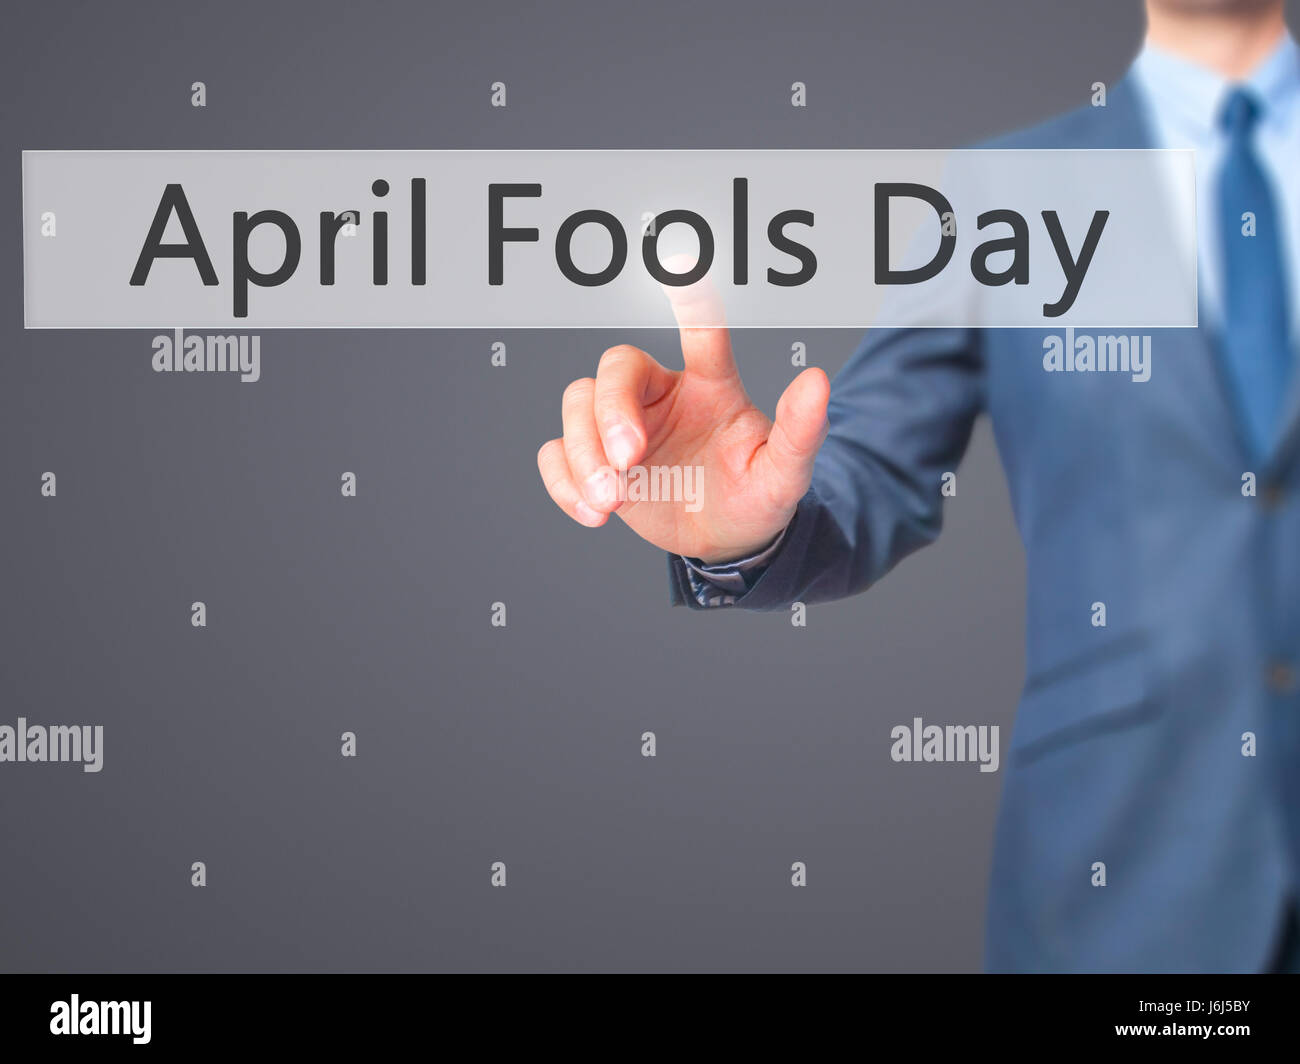 April Fools Day - Businessman appuyez sur sur écran numérique. Business, internet concept. Stock Photo Banque D'Images